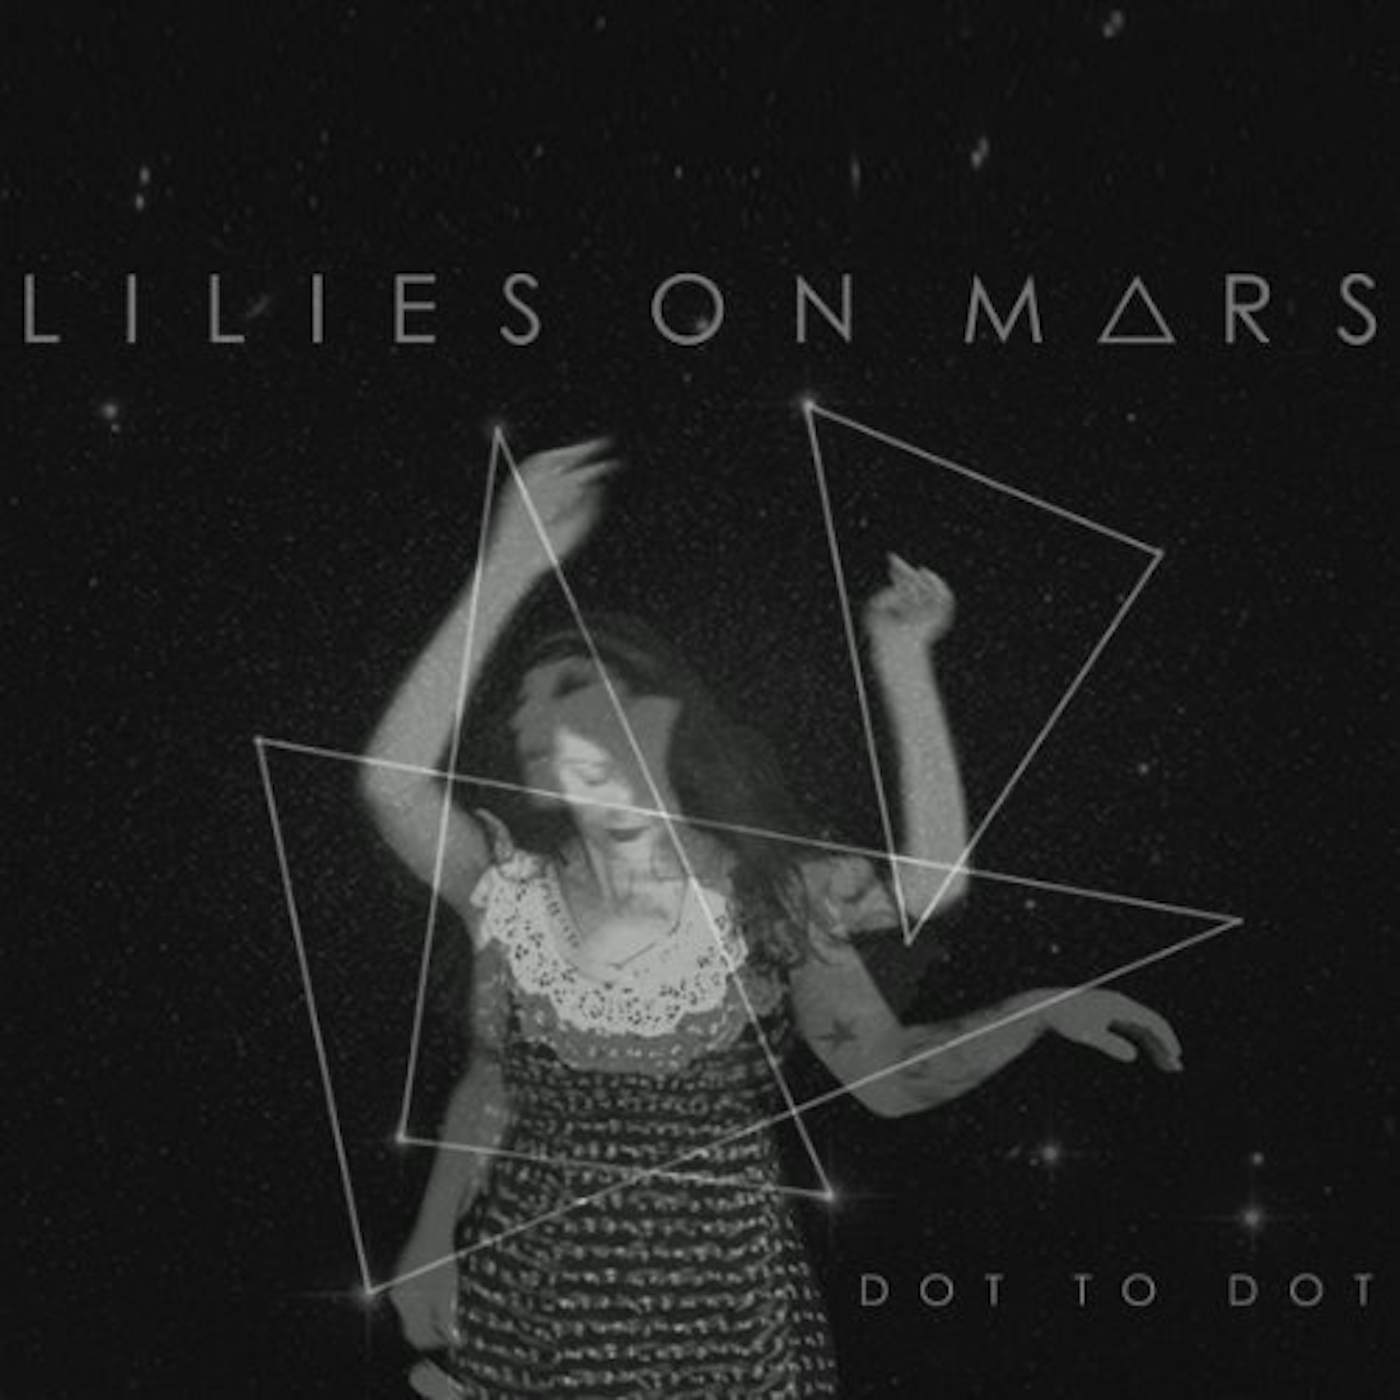 Lilies on Mars Dot to Dot Vinyl Record